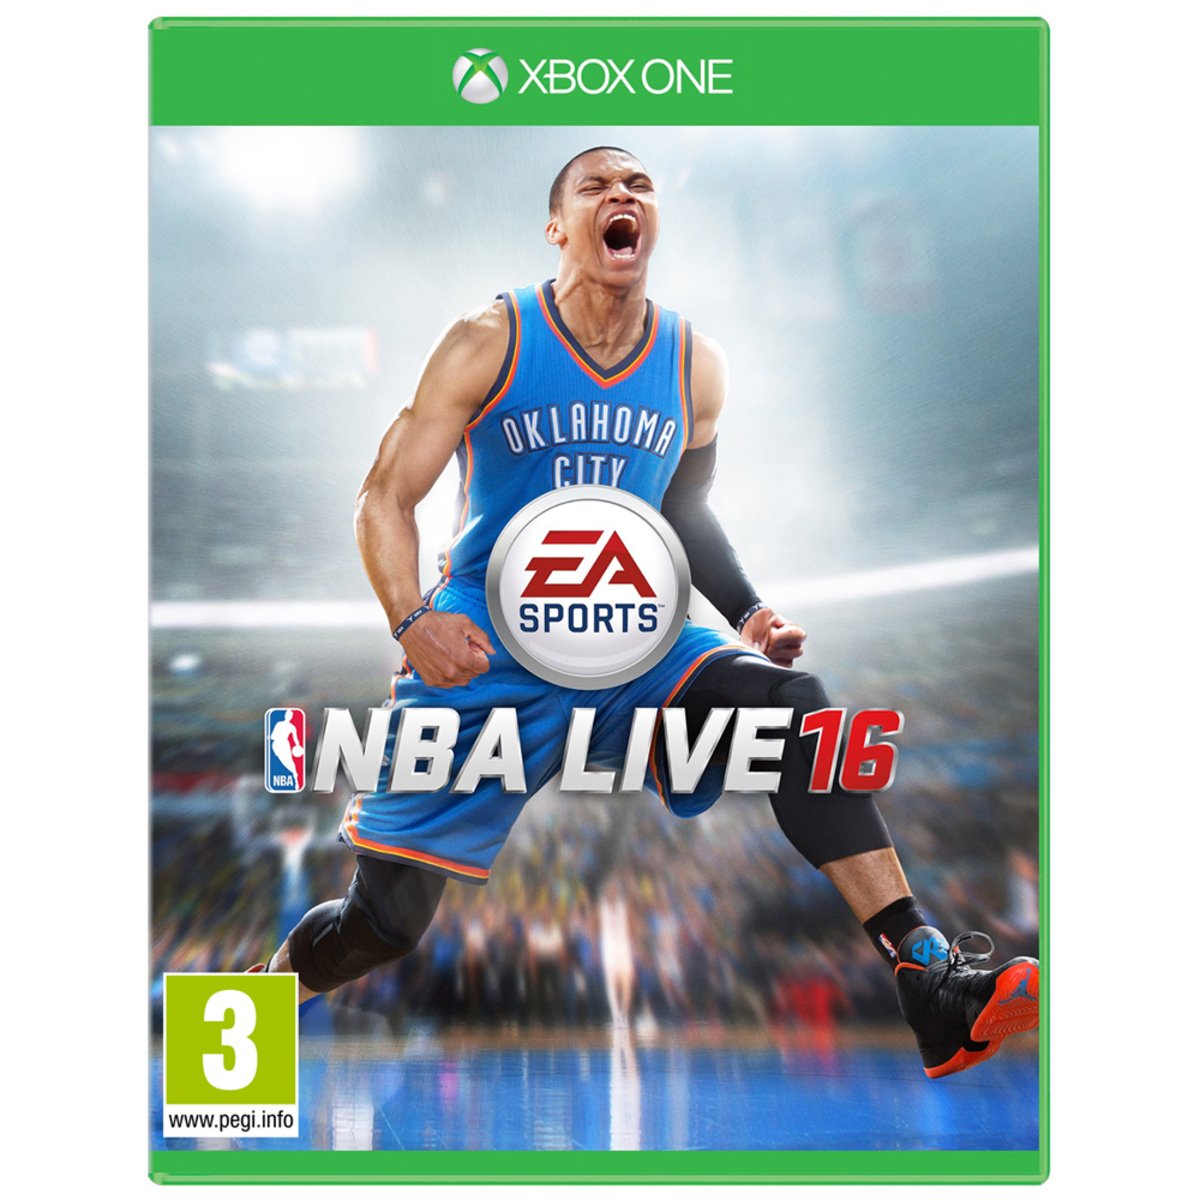 Xbox One NBA Live 16